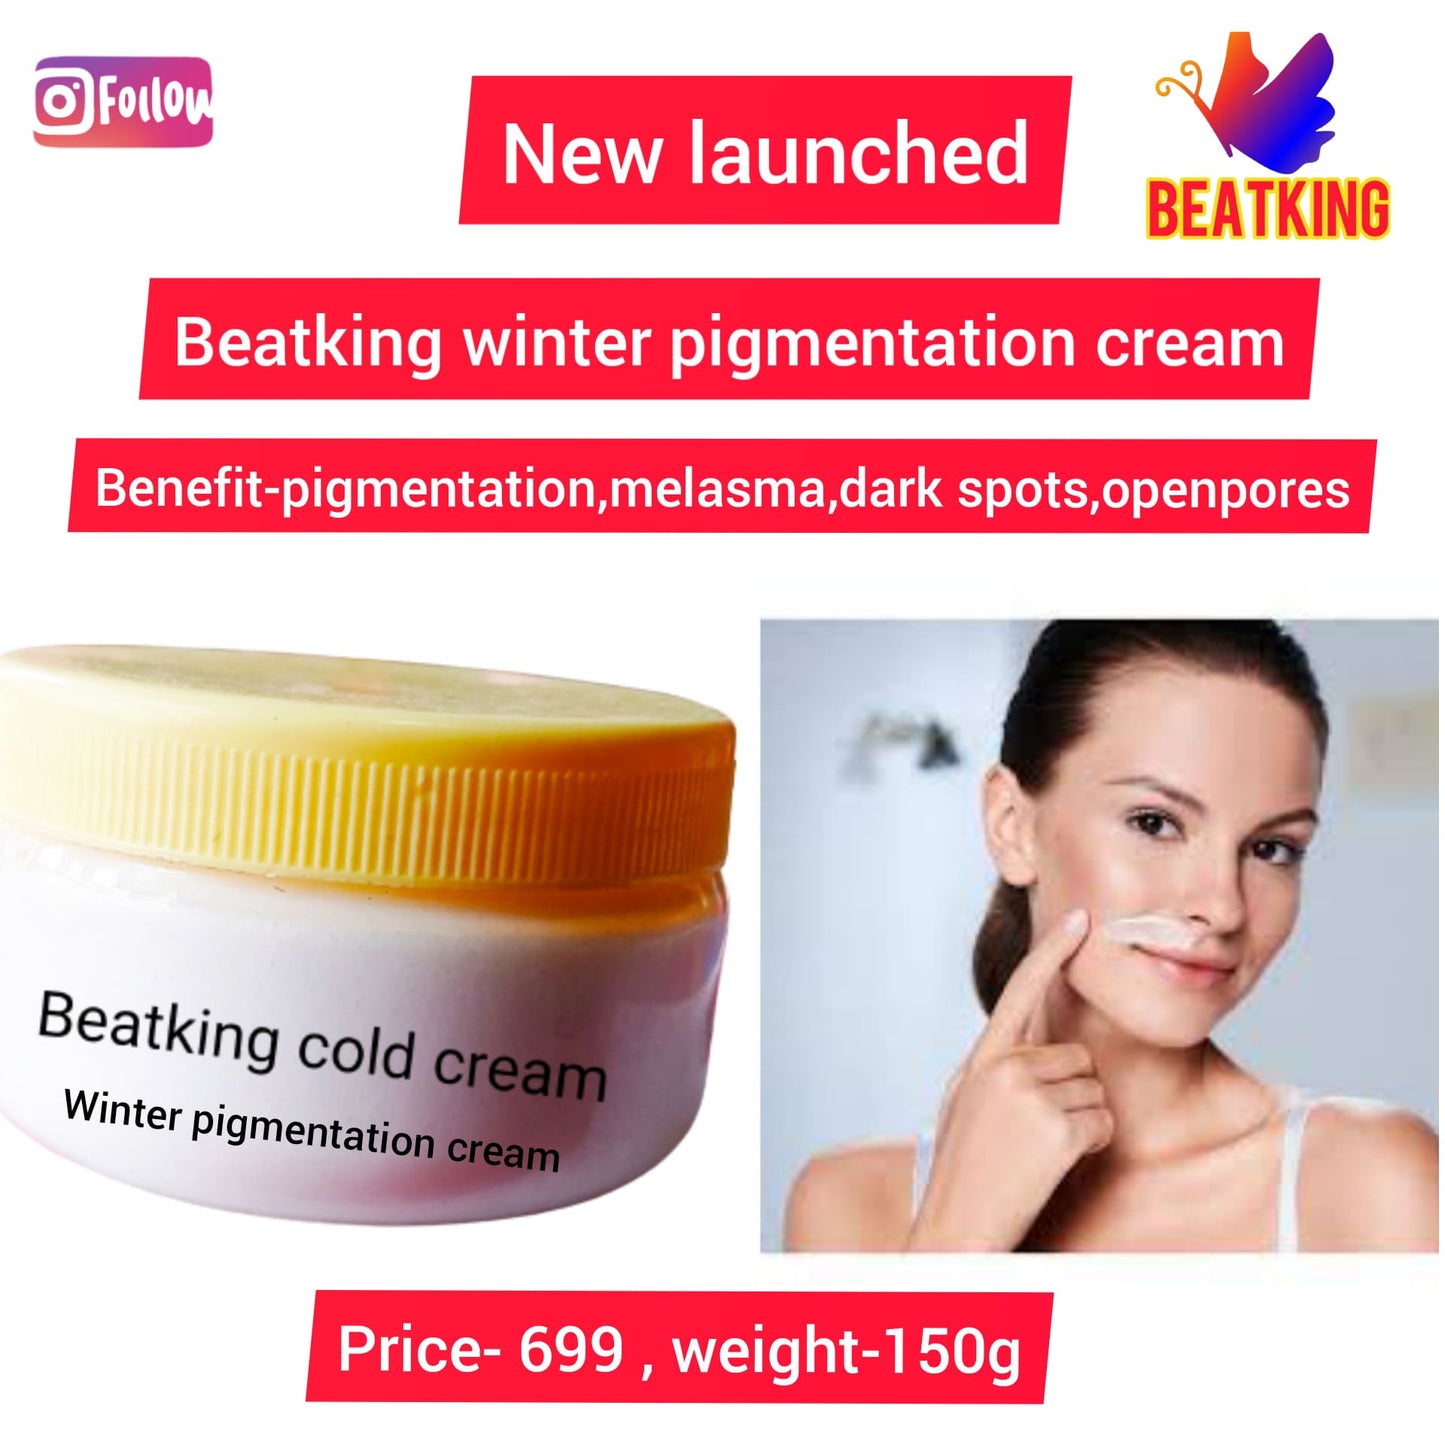 Winter pigmentation cream